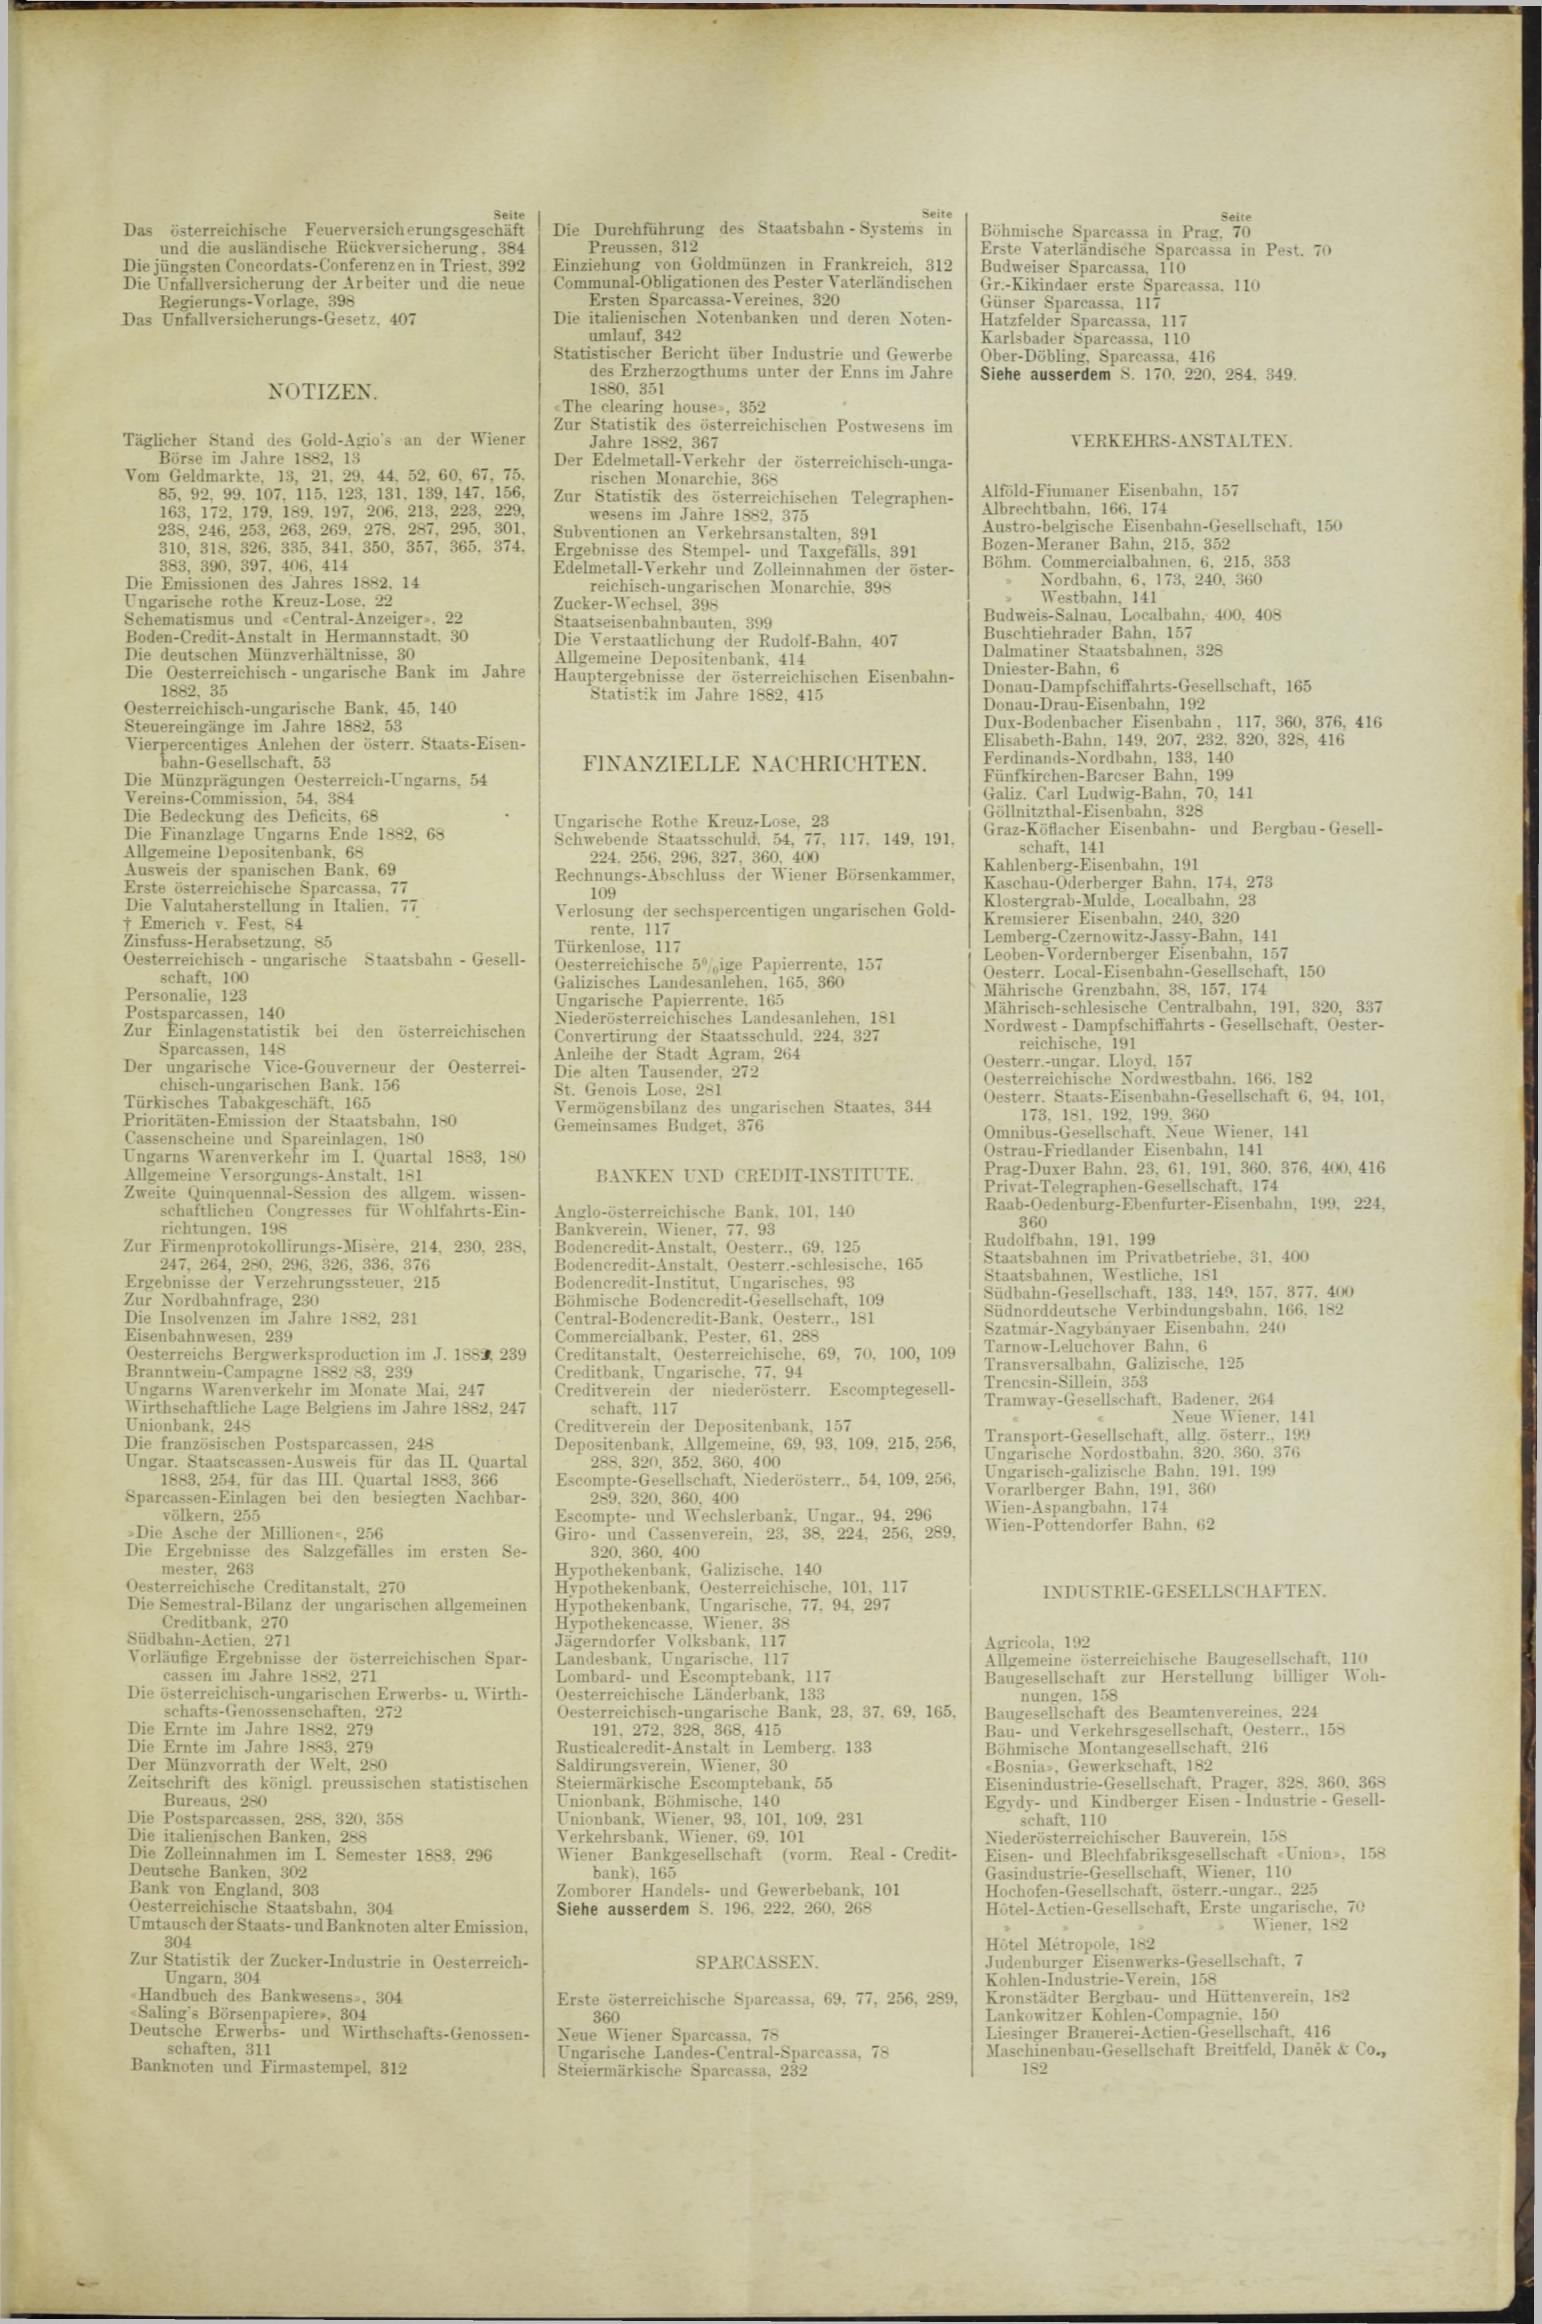 Der Tresor 18.10.1883 - Seite 11